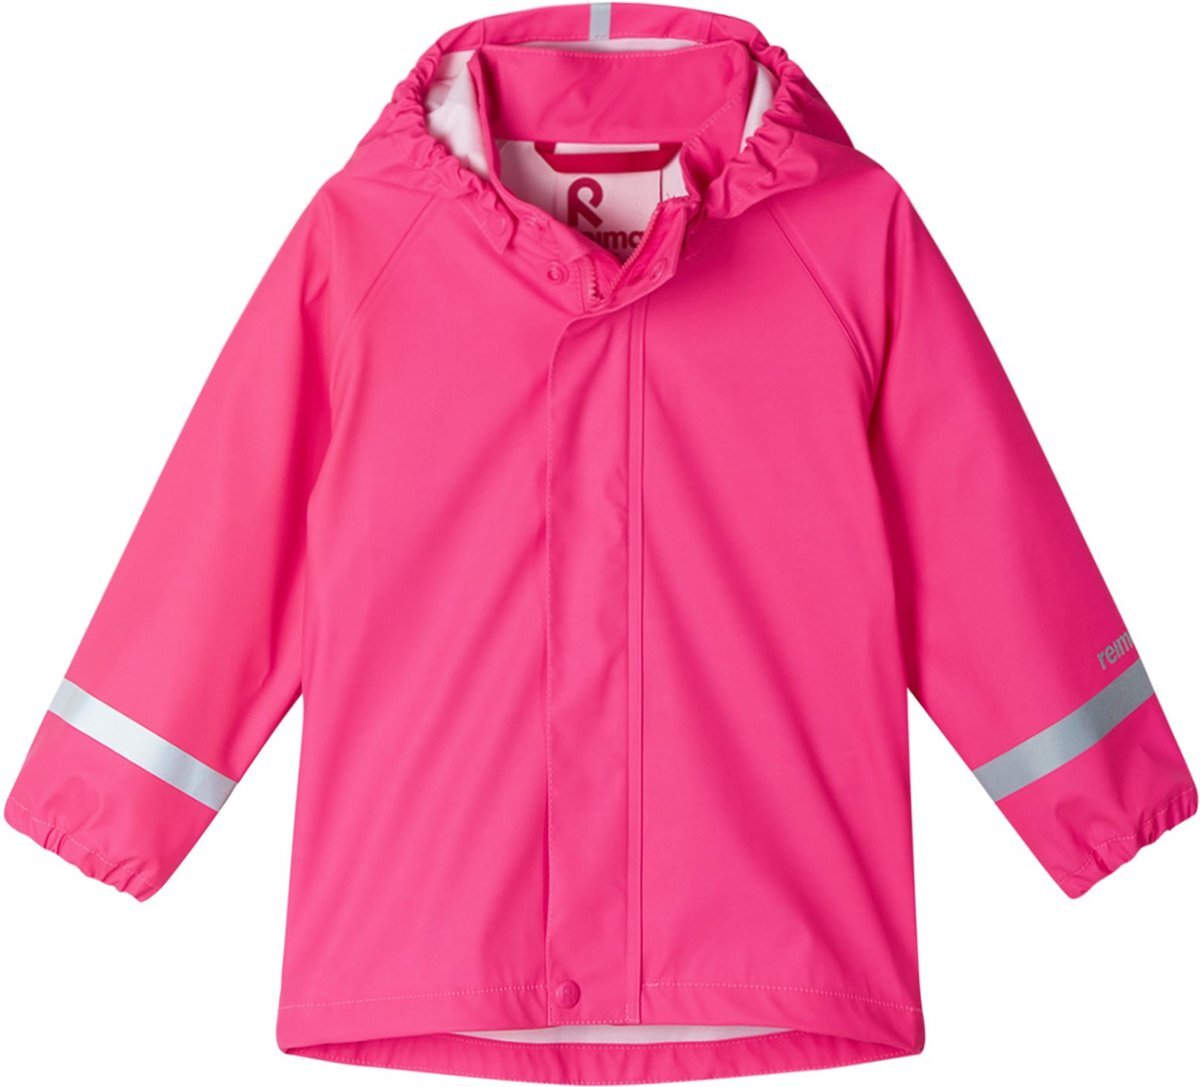 Reima - Regenjas voor baby's - Lampi - Suikerspin roze - maat 98cm